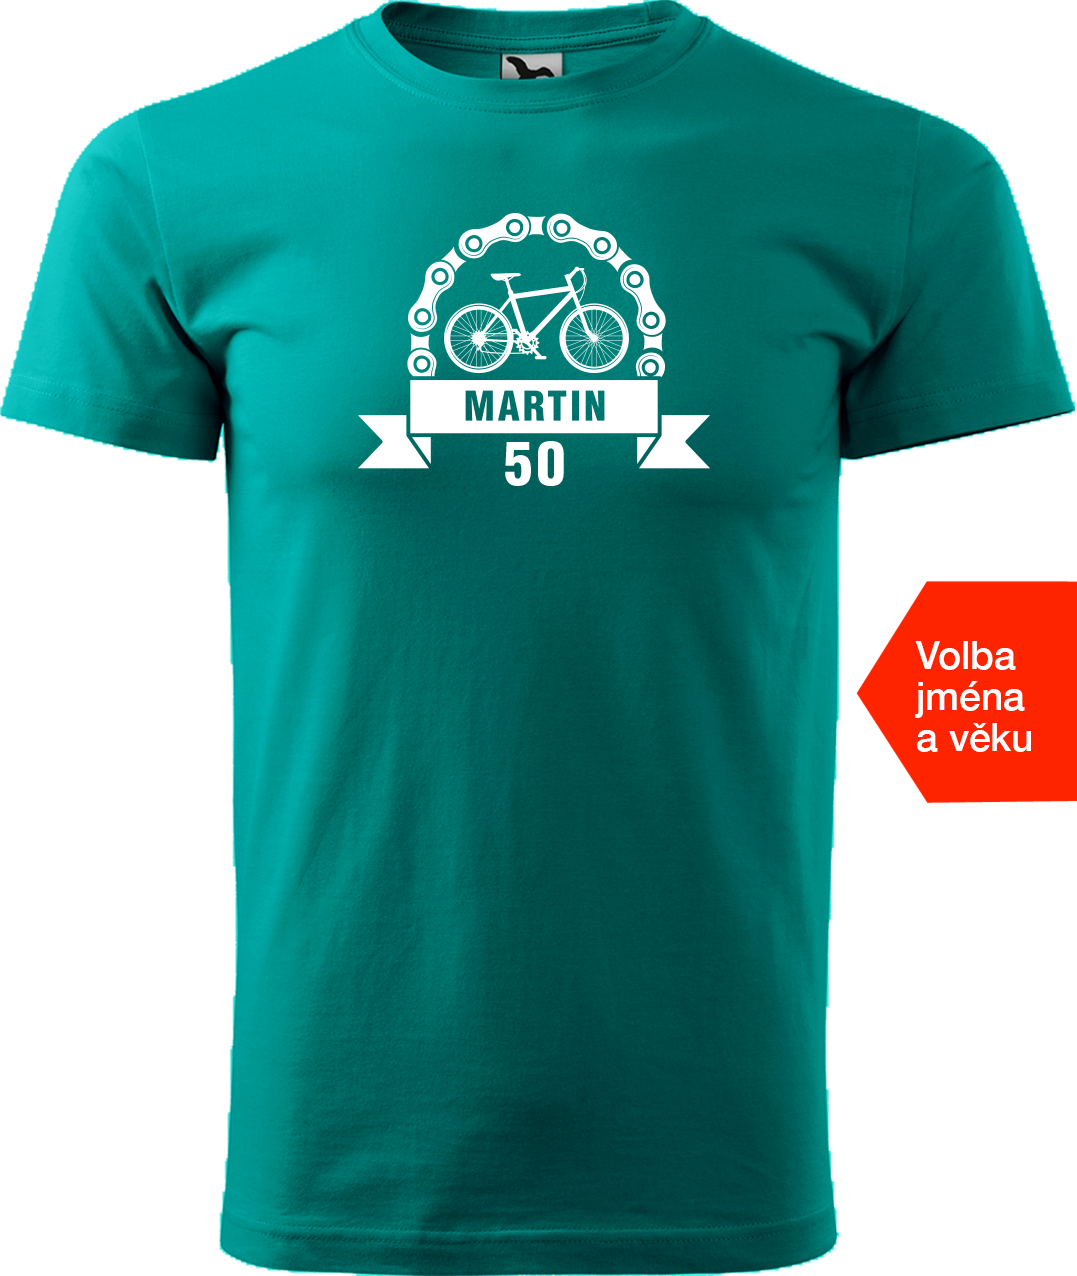 Pánské tričko pro cyklistu se jménem a věkem - Blahopřání Velikost: 4XL, Barva: Emerald (19)